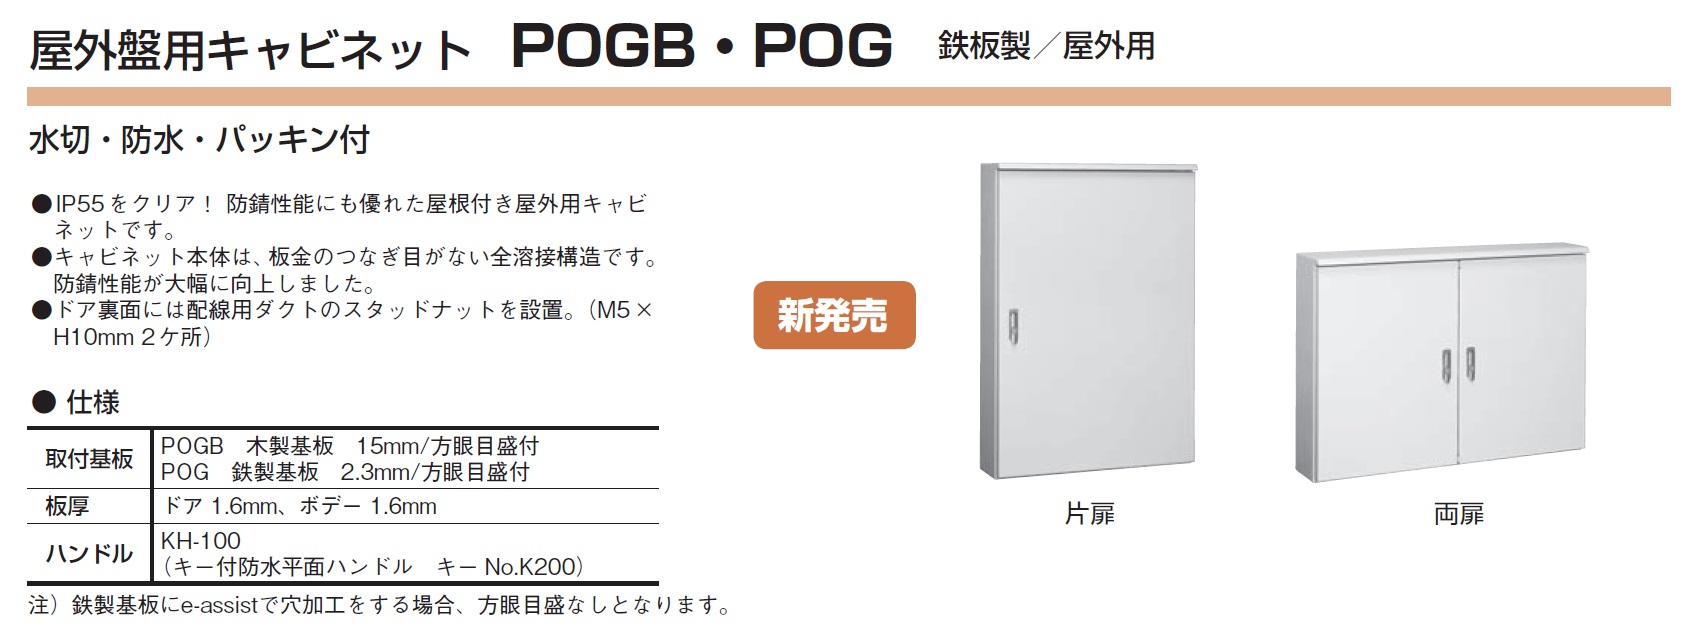 河村電器産業 POG4050-20K 屋外盤用キャビネット 屋根付/屋外用/鉄製